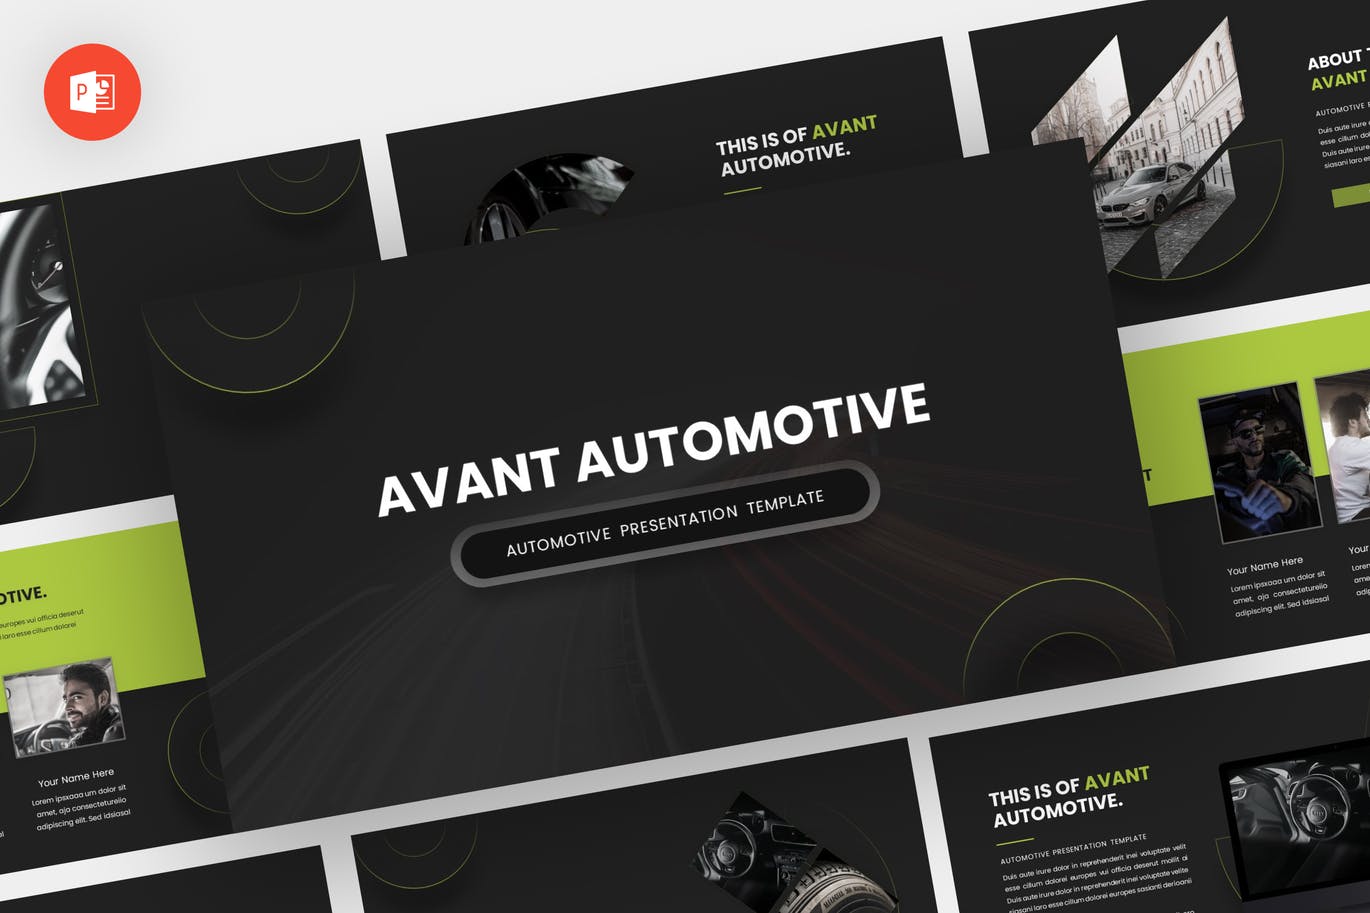 汽车品牌介绍PPT幻灯片模板素材 Avant – Automotive Powerpoint Template 幻灯图表 第1张